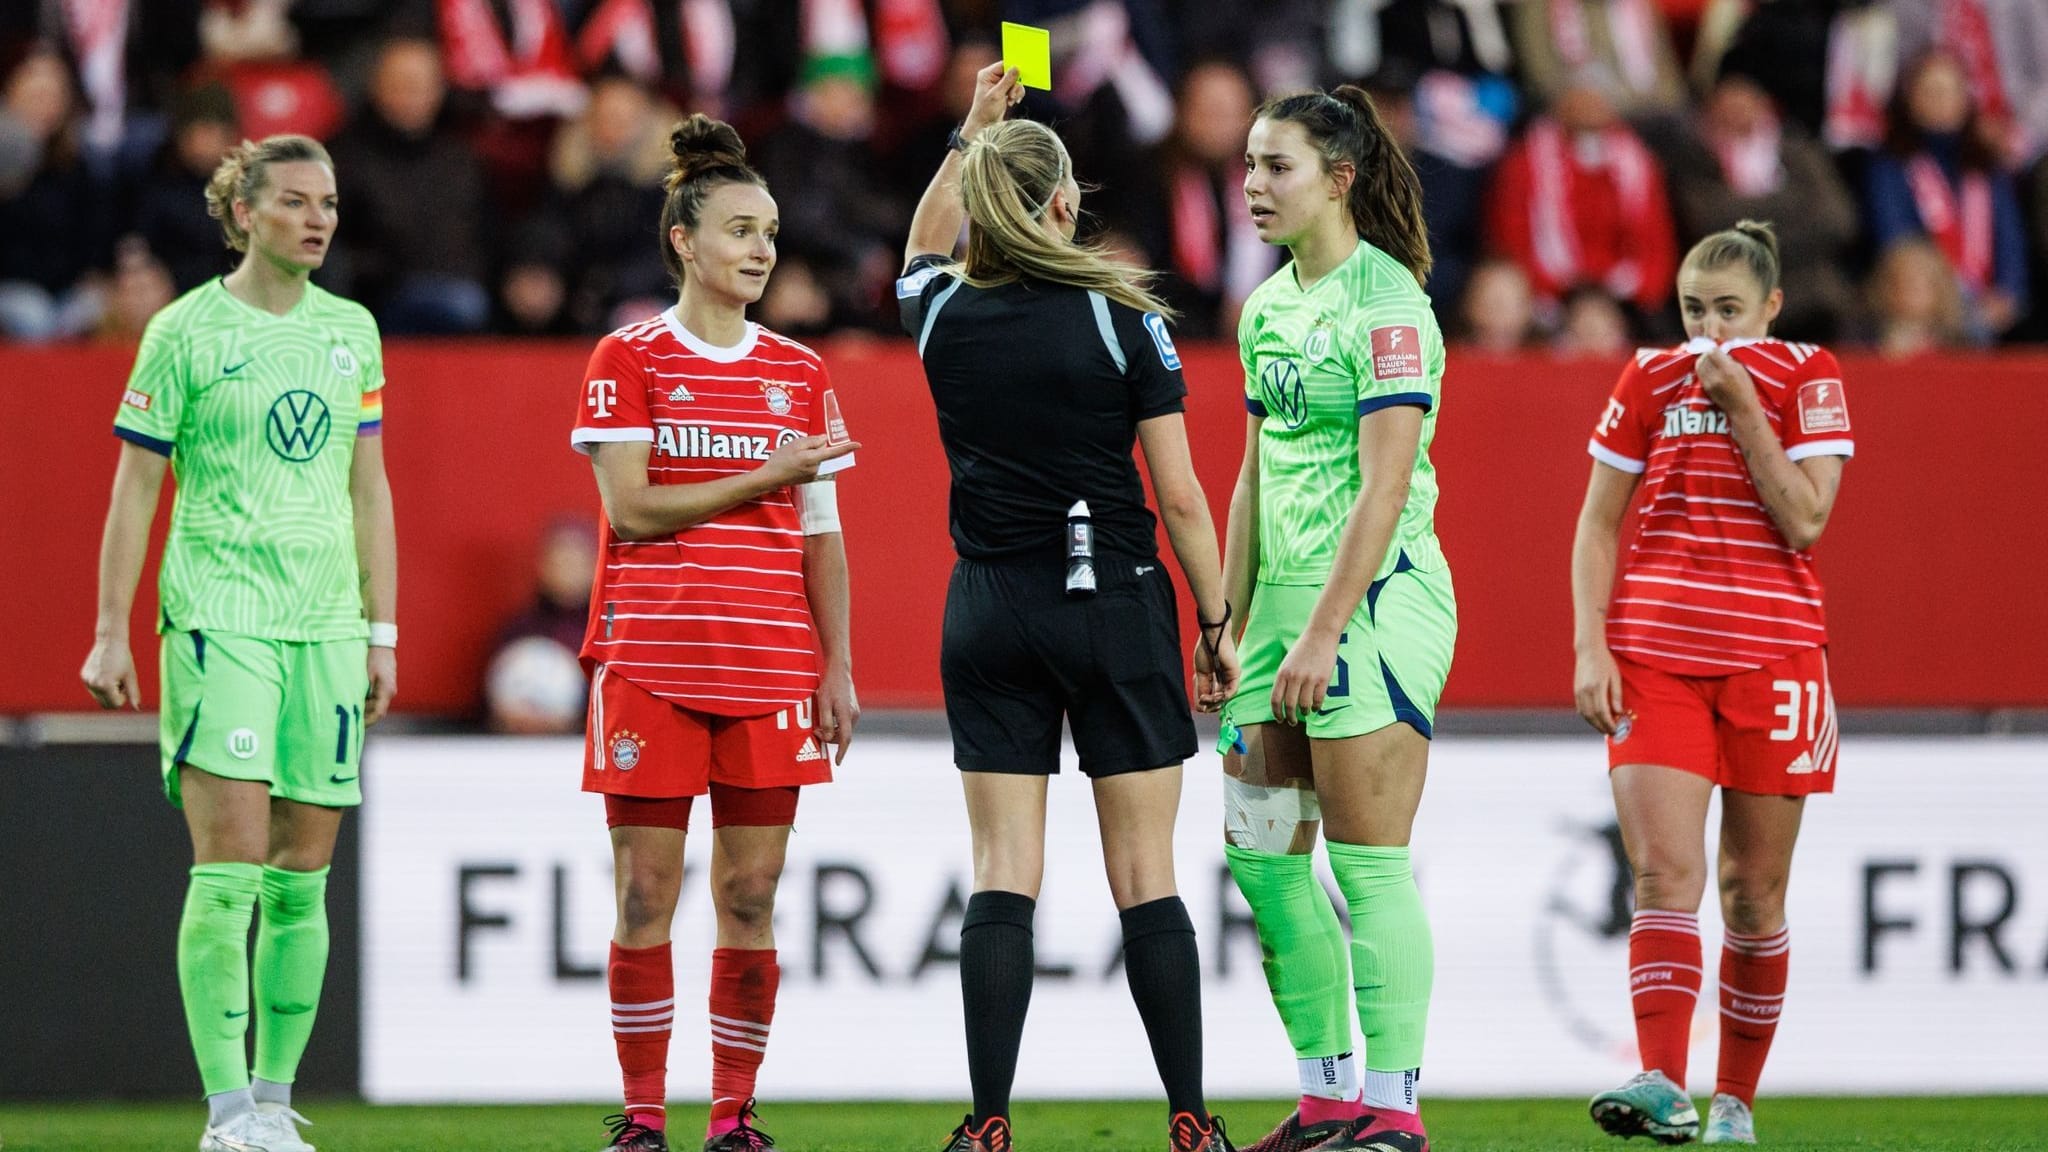 Kritik an Schiedsrichterinnen in der Frauen-Bundesliga